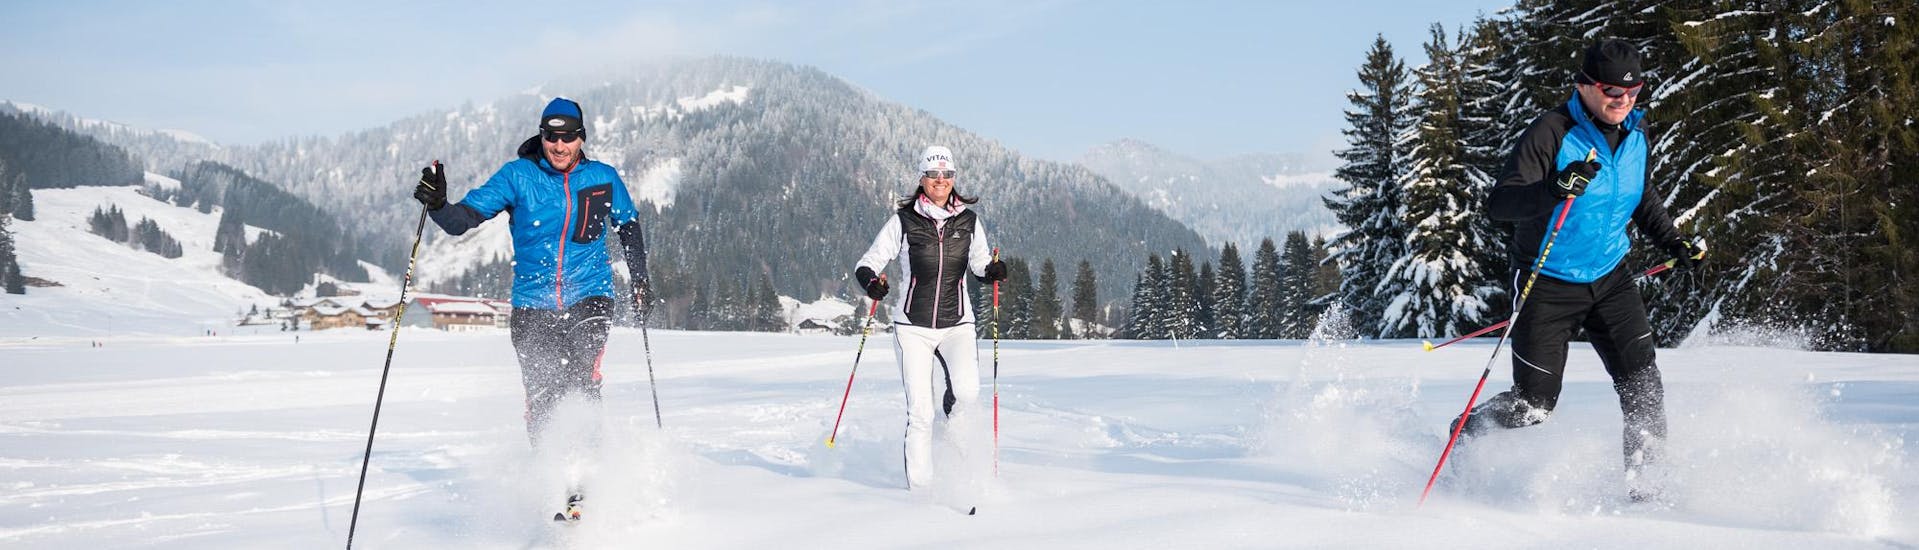 Drei Wintersportler besuchen den privaten Langlaufkurs für alle Levels - Klassisch bei der Schneesportschule Balderschwang. 